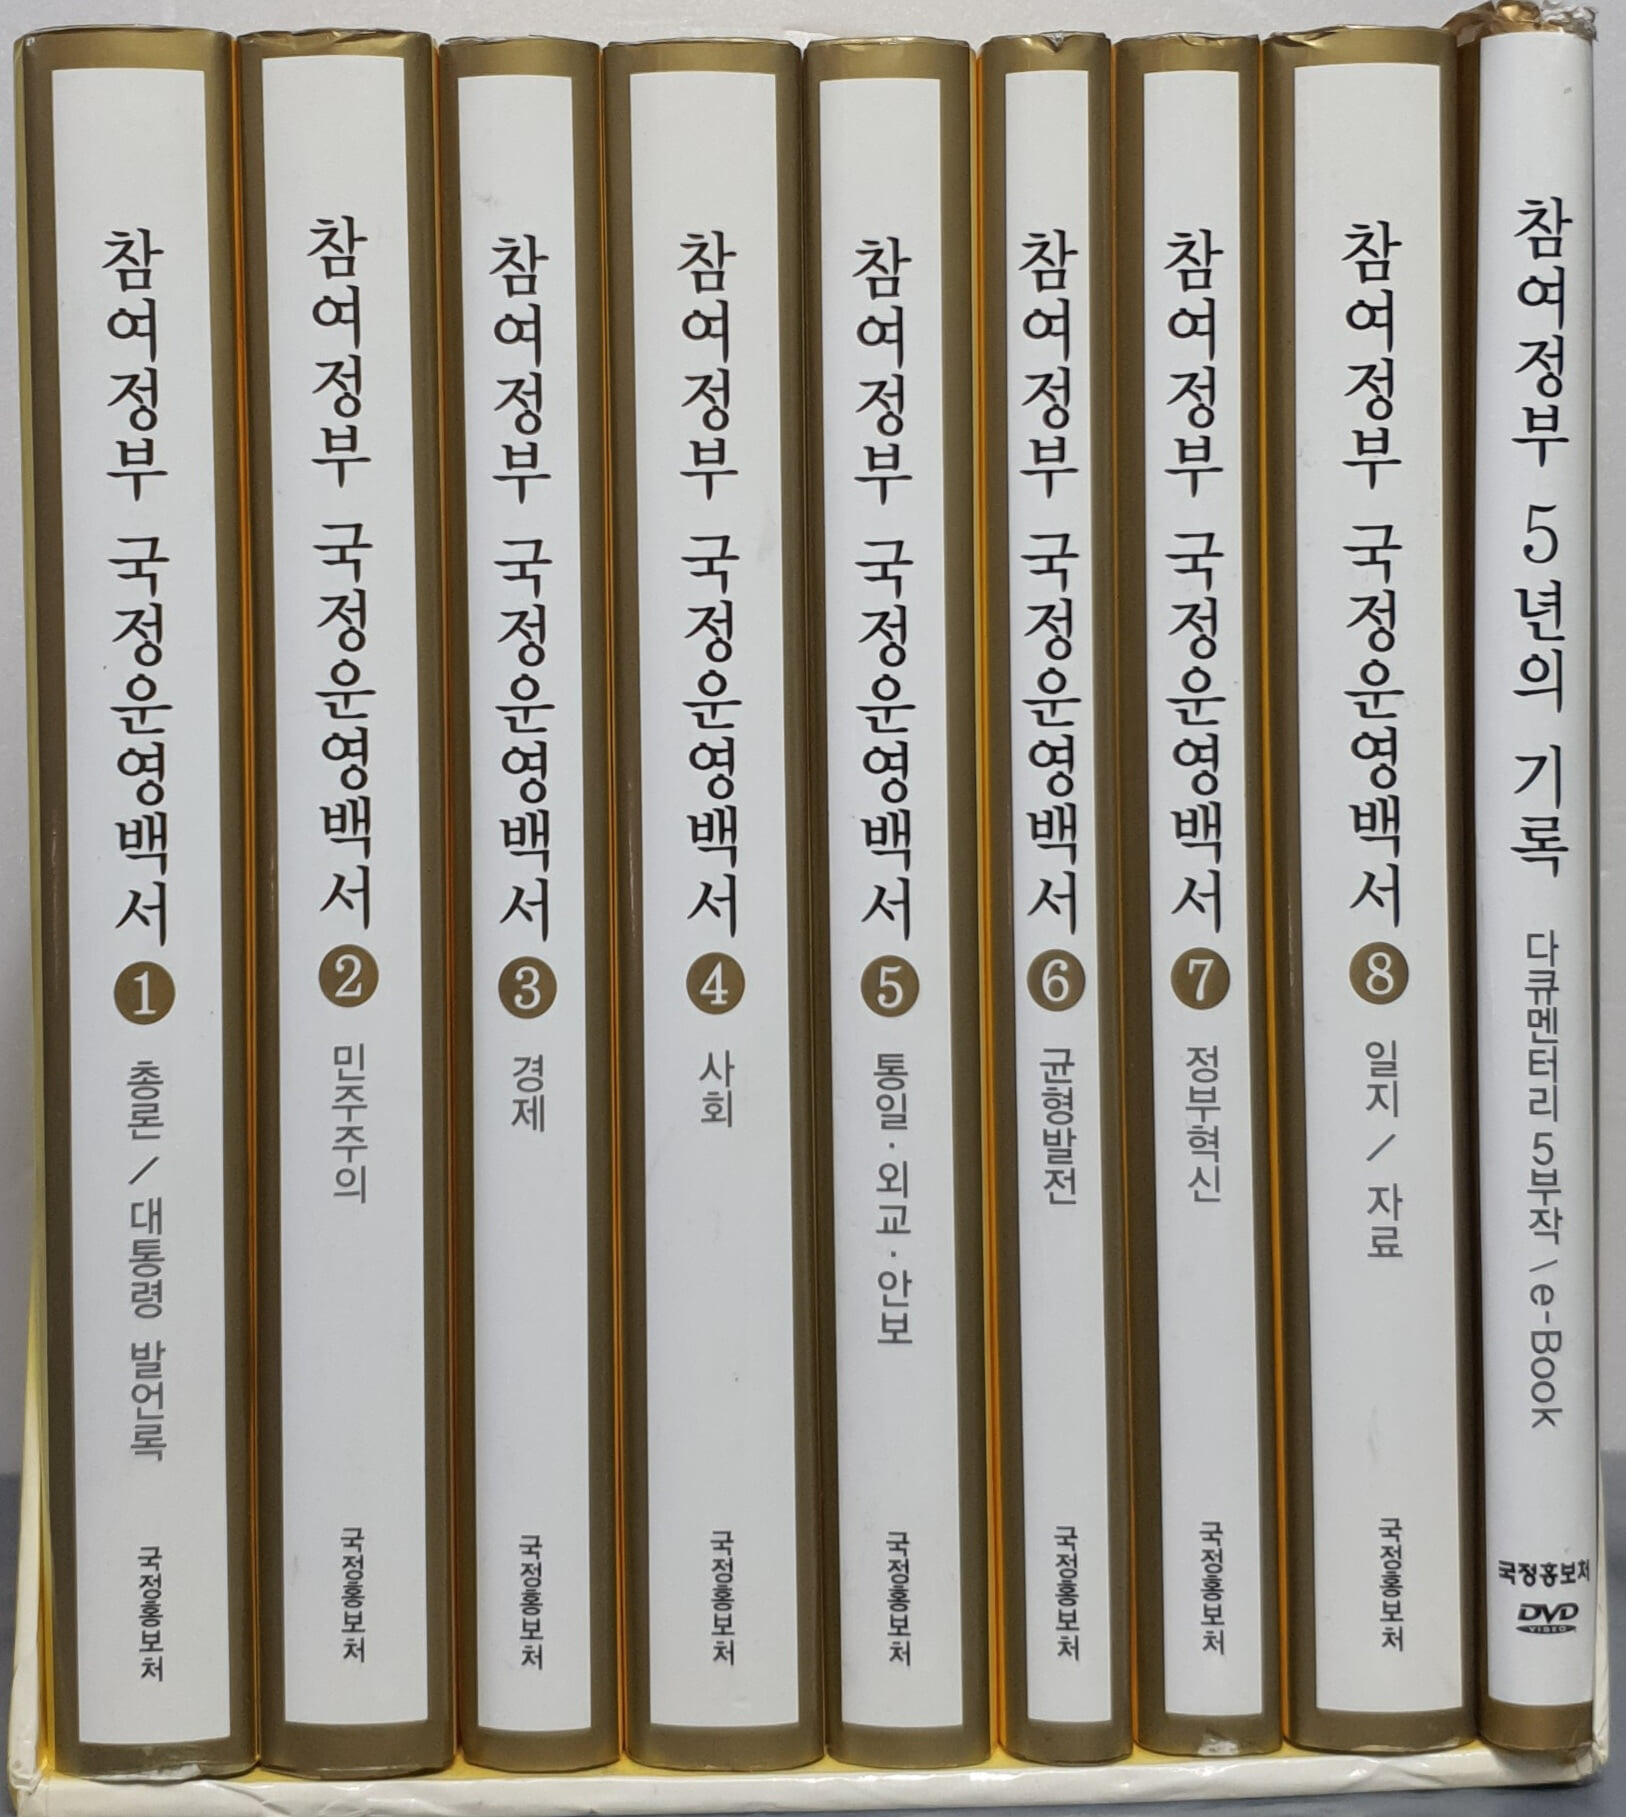 참여정부 국정운영백서 ( 1~8권 /DVD 7장 ) 세트